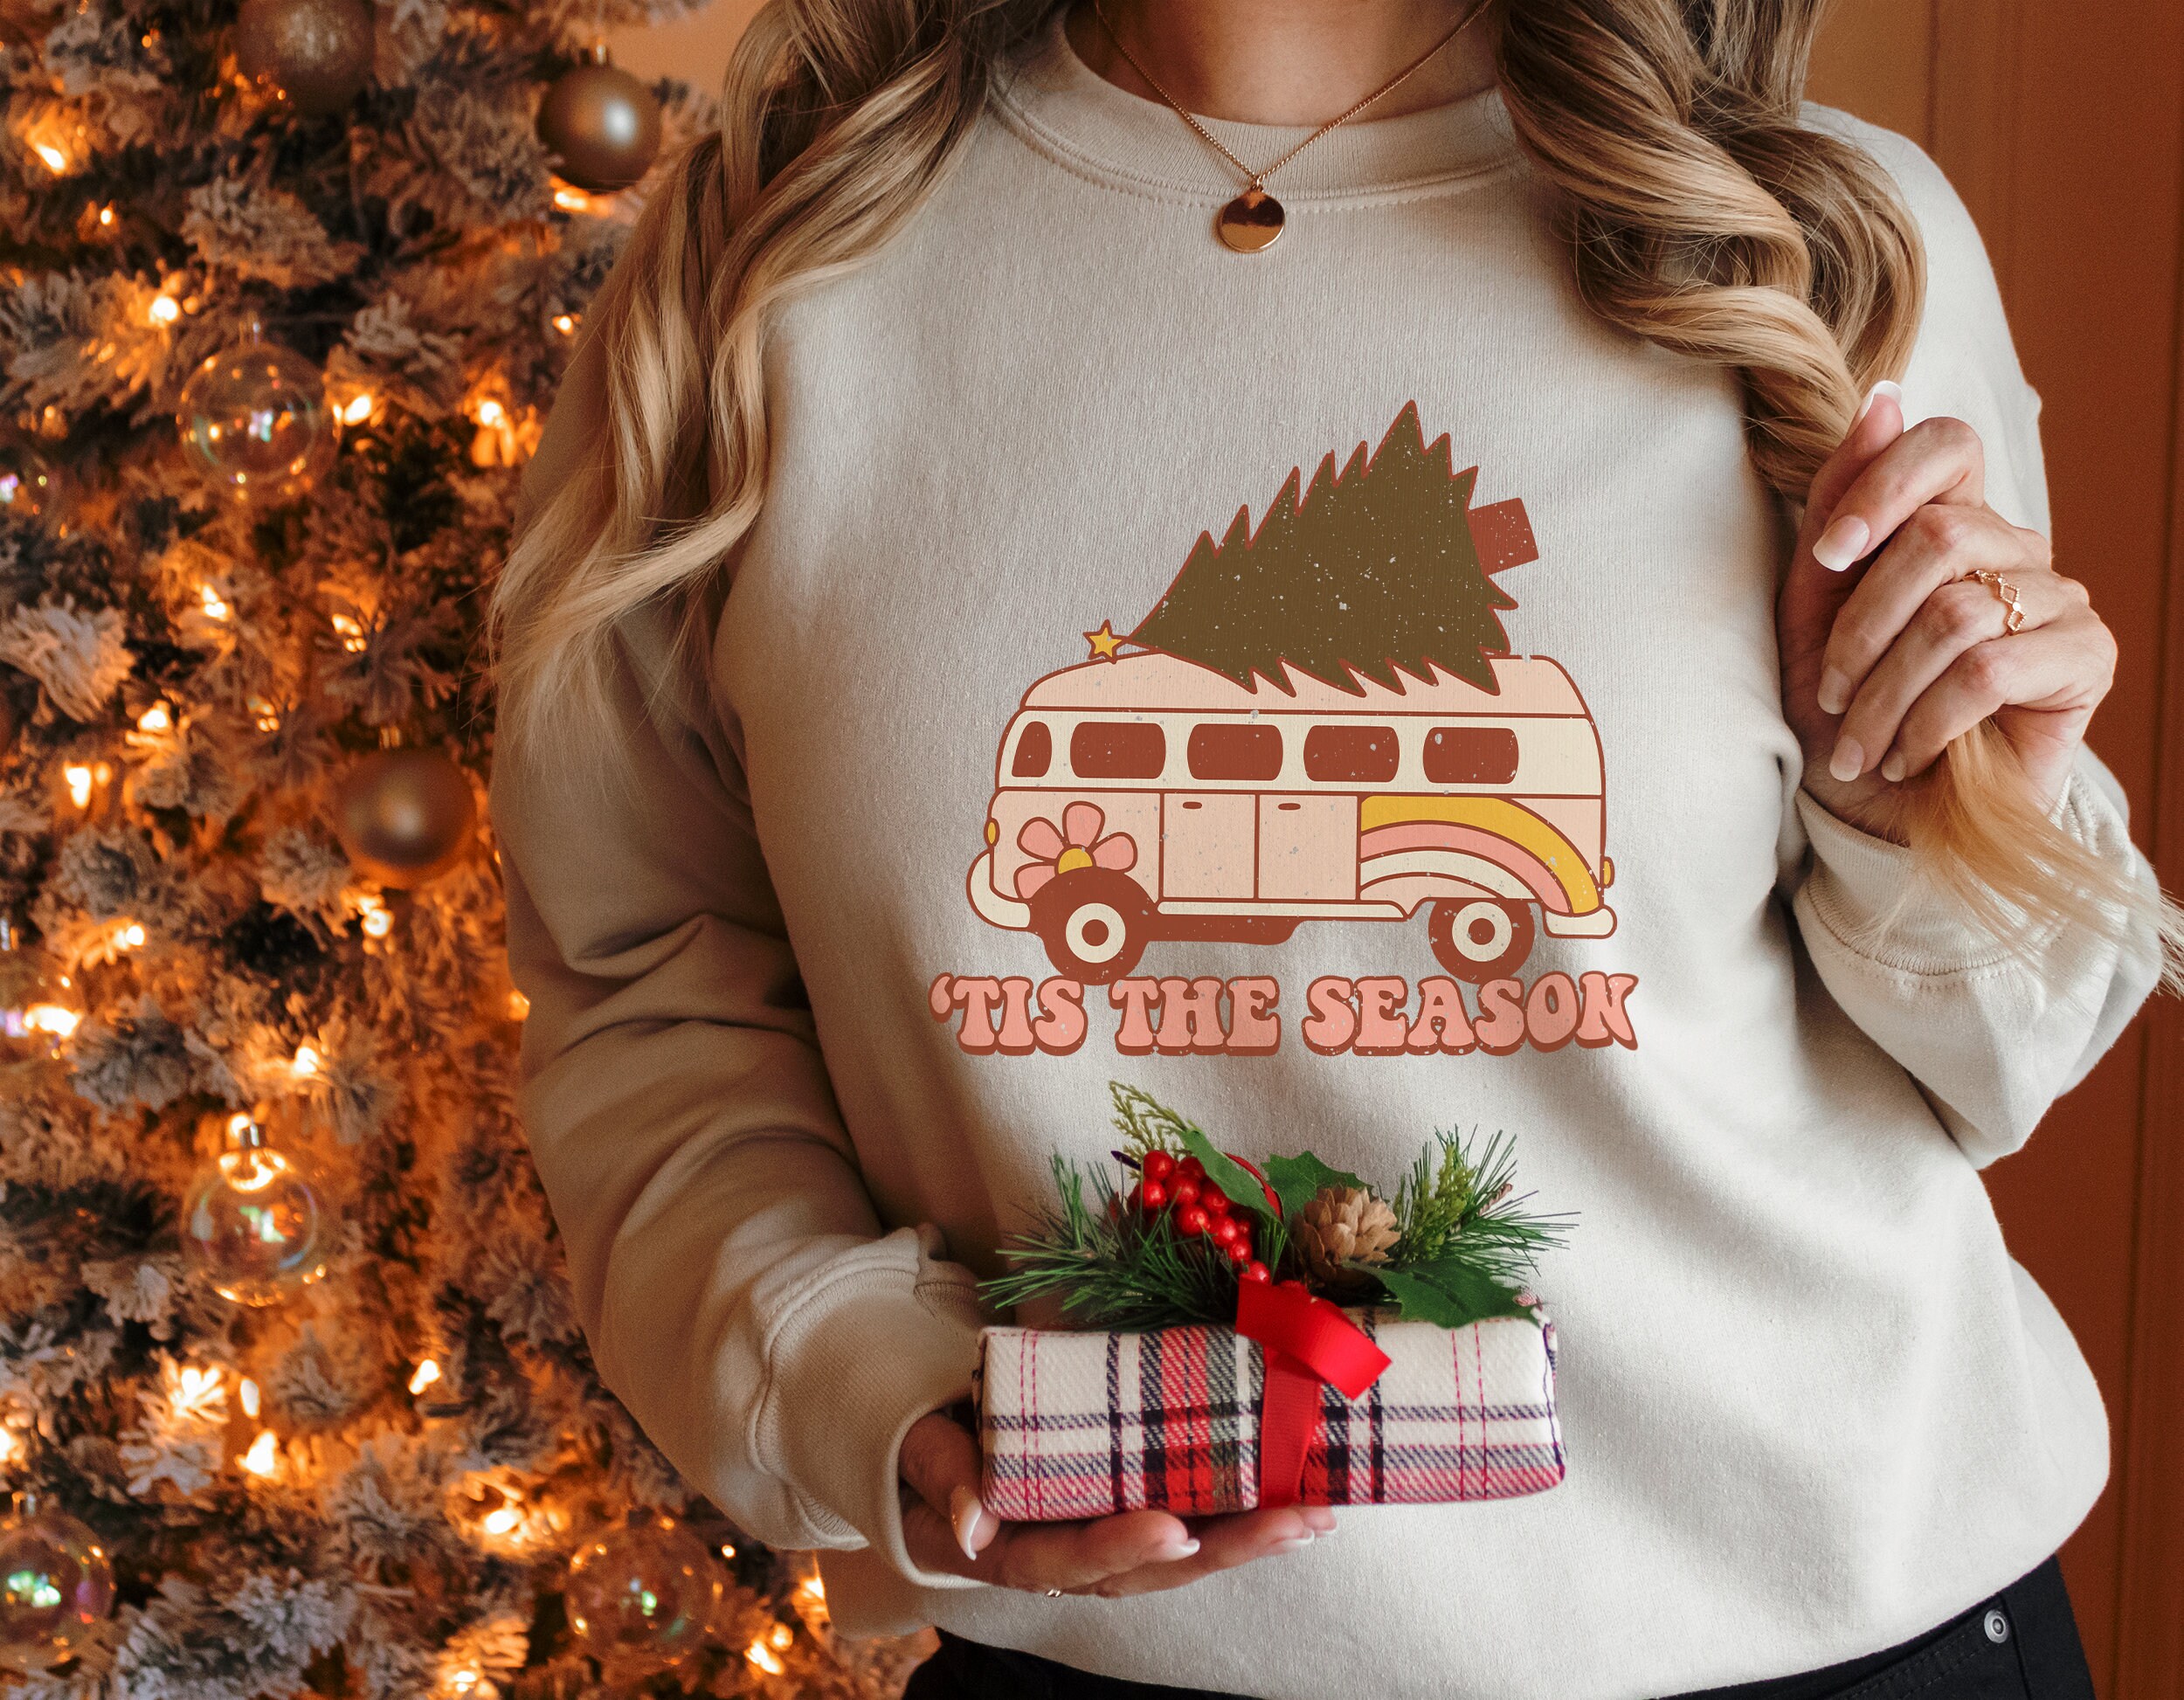 Barlver Womens Christmas Pullover Shirts Holiday Vacation Graphic Tees Tops 